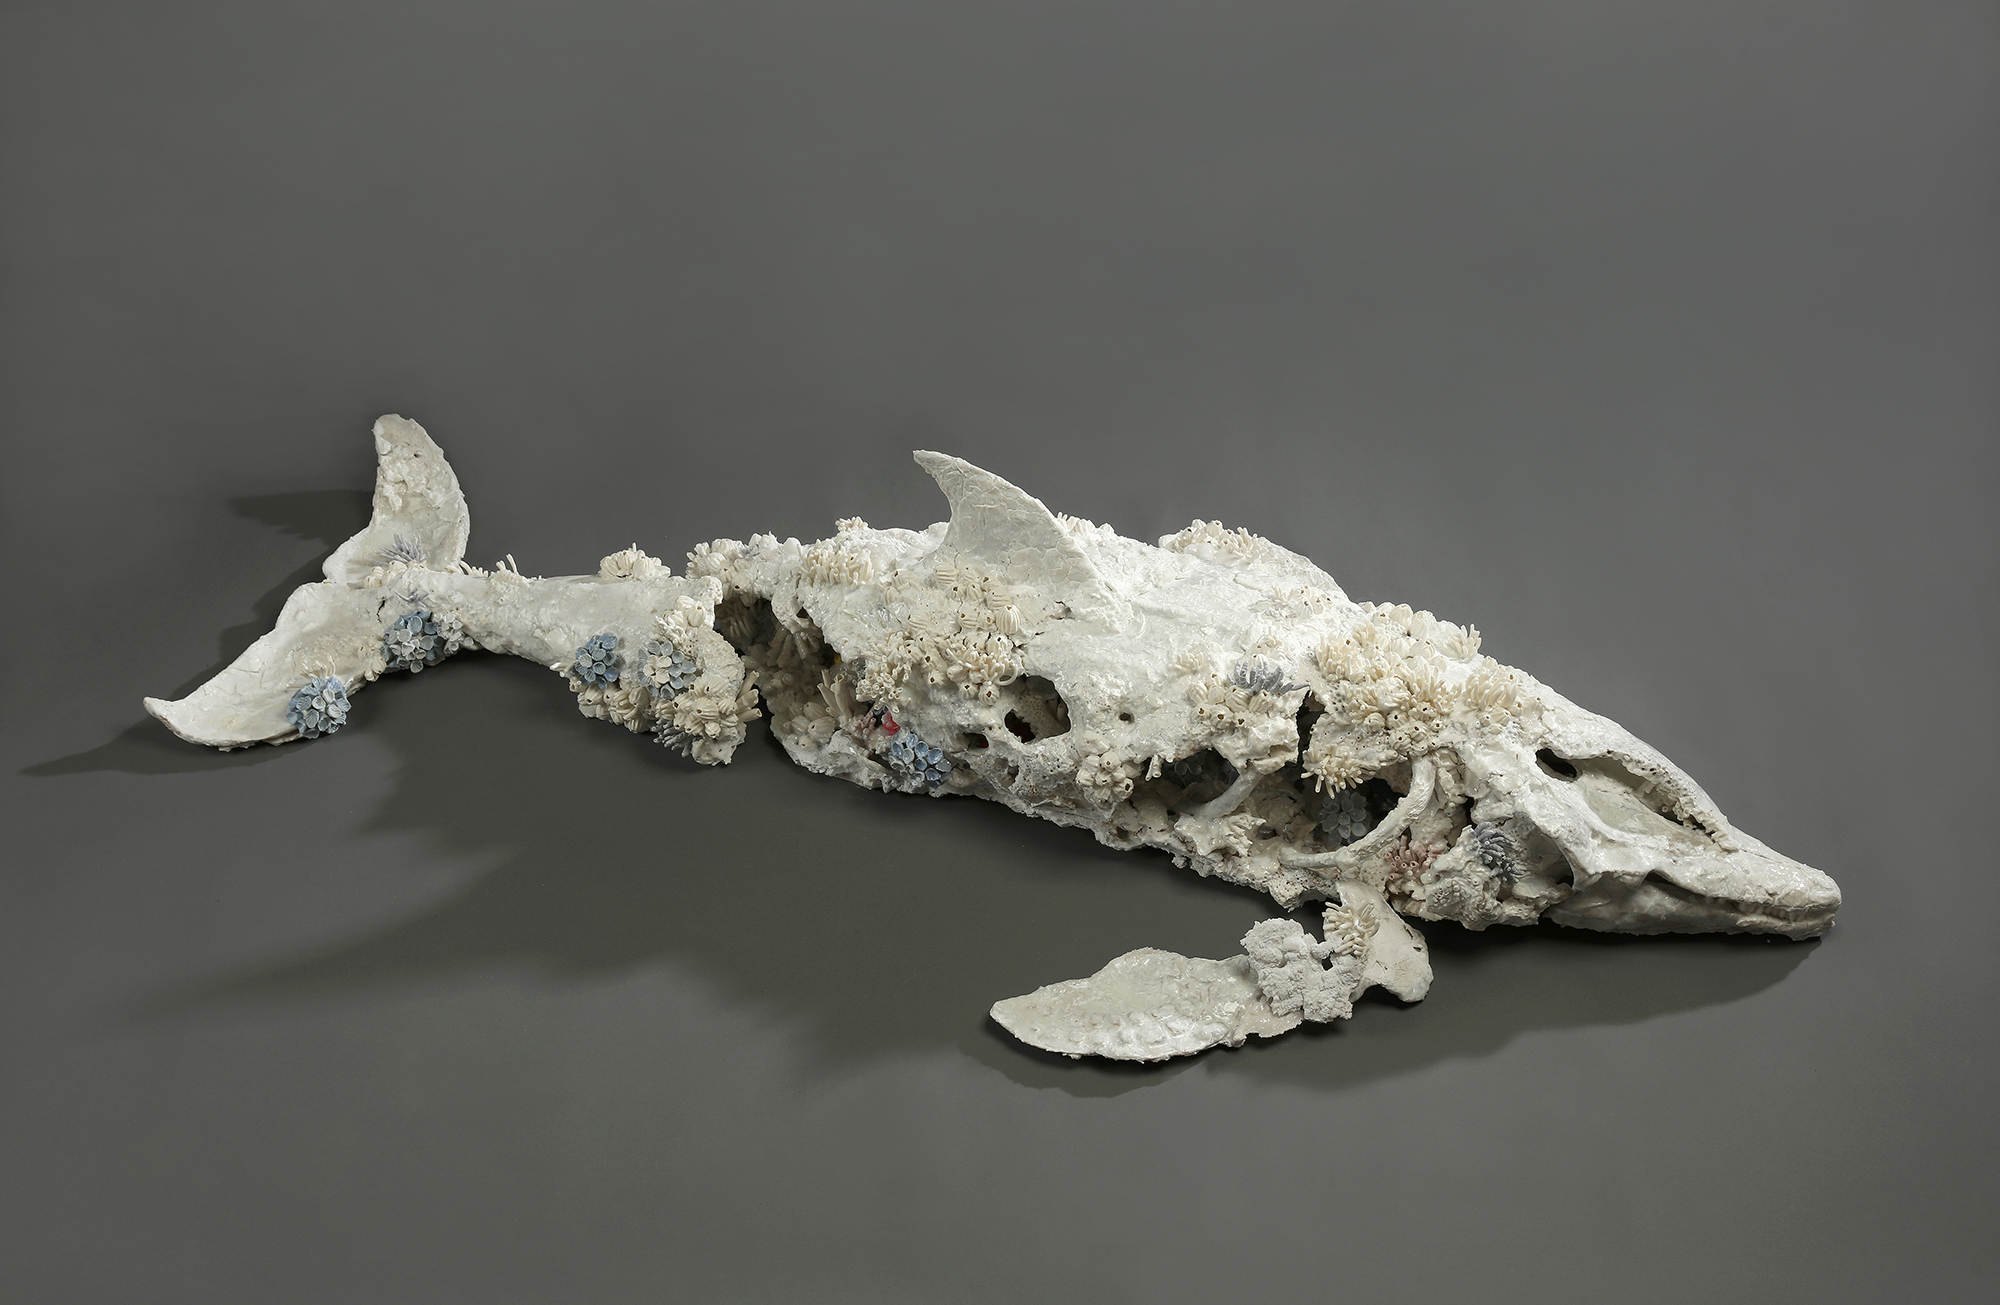 創作獎首獎得主王裔婷《隕落中的重生化石—熱帶斑海豚》，表現生態與人為迫害的深刻體悟。